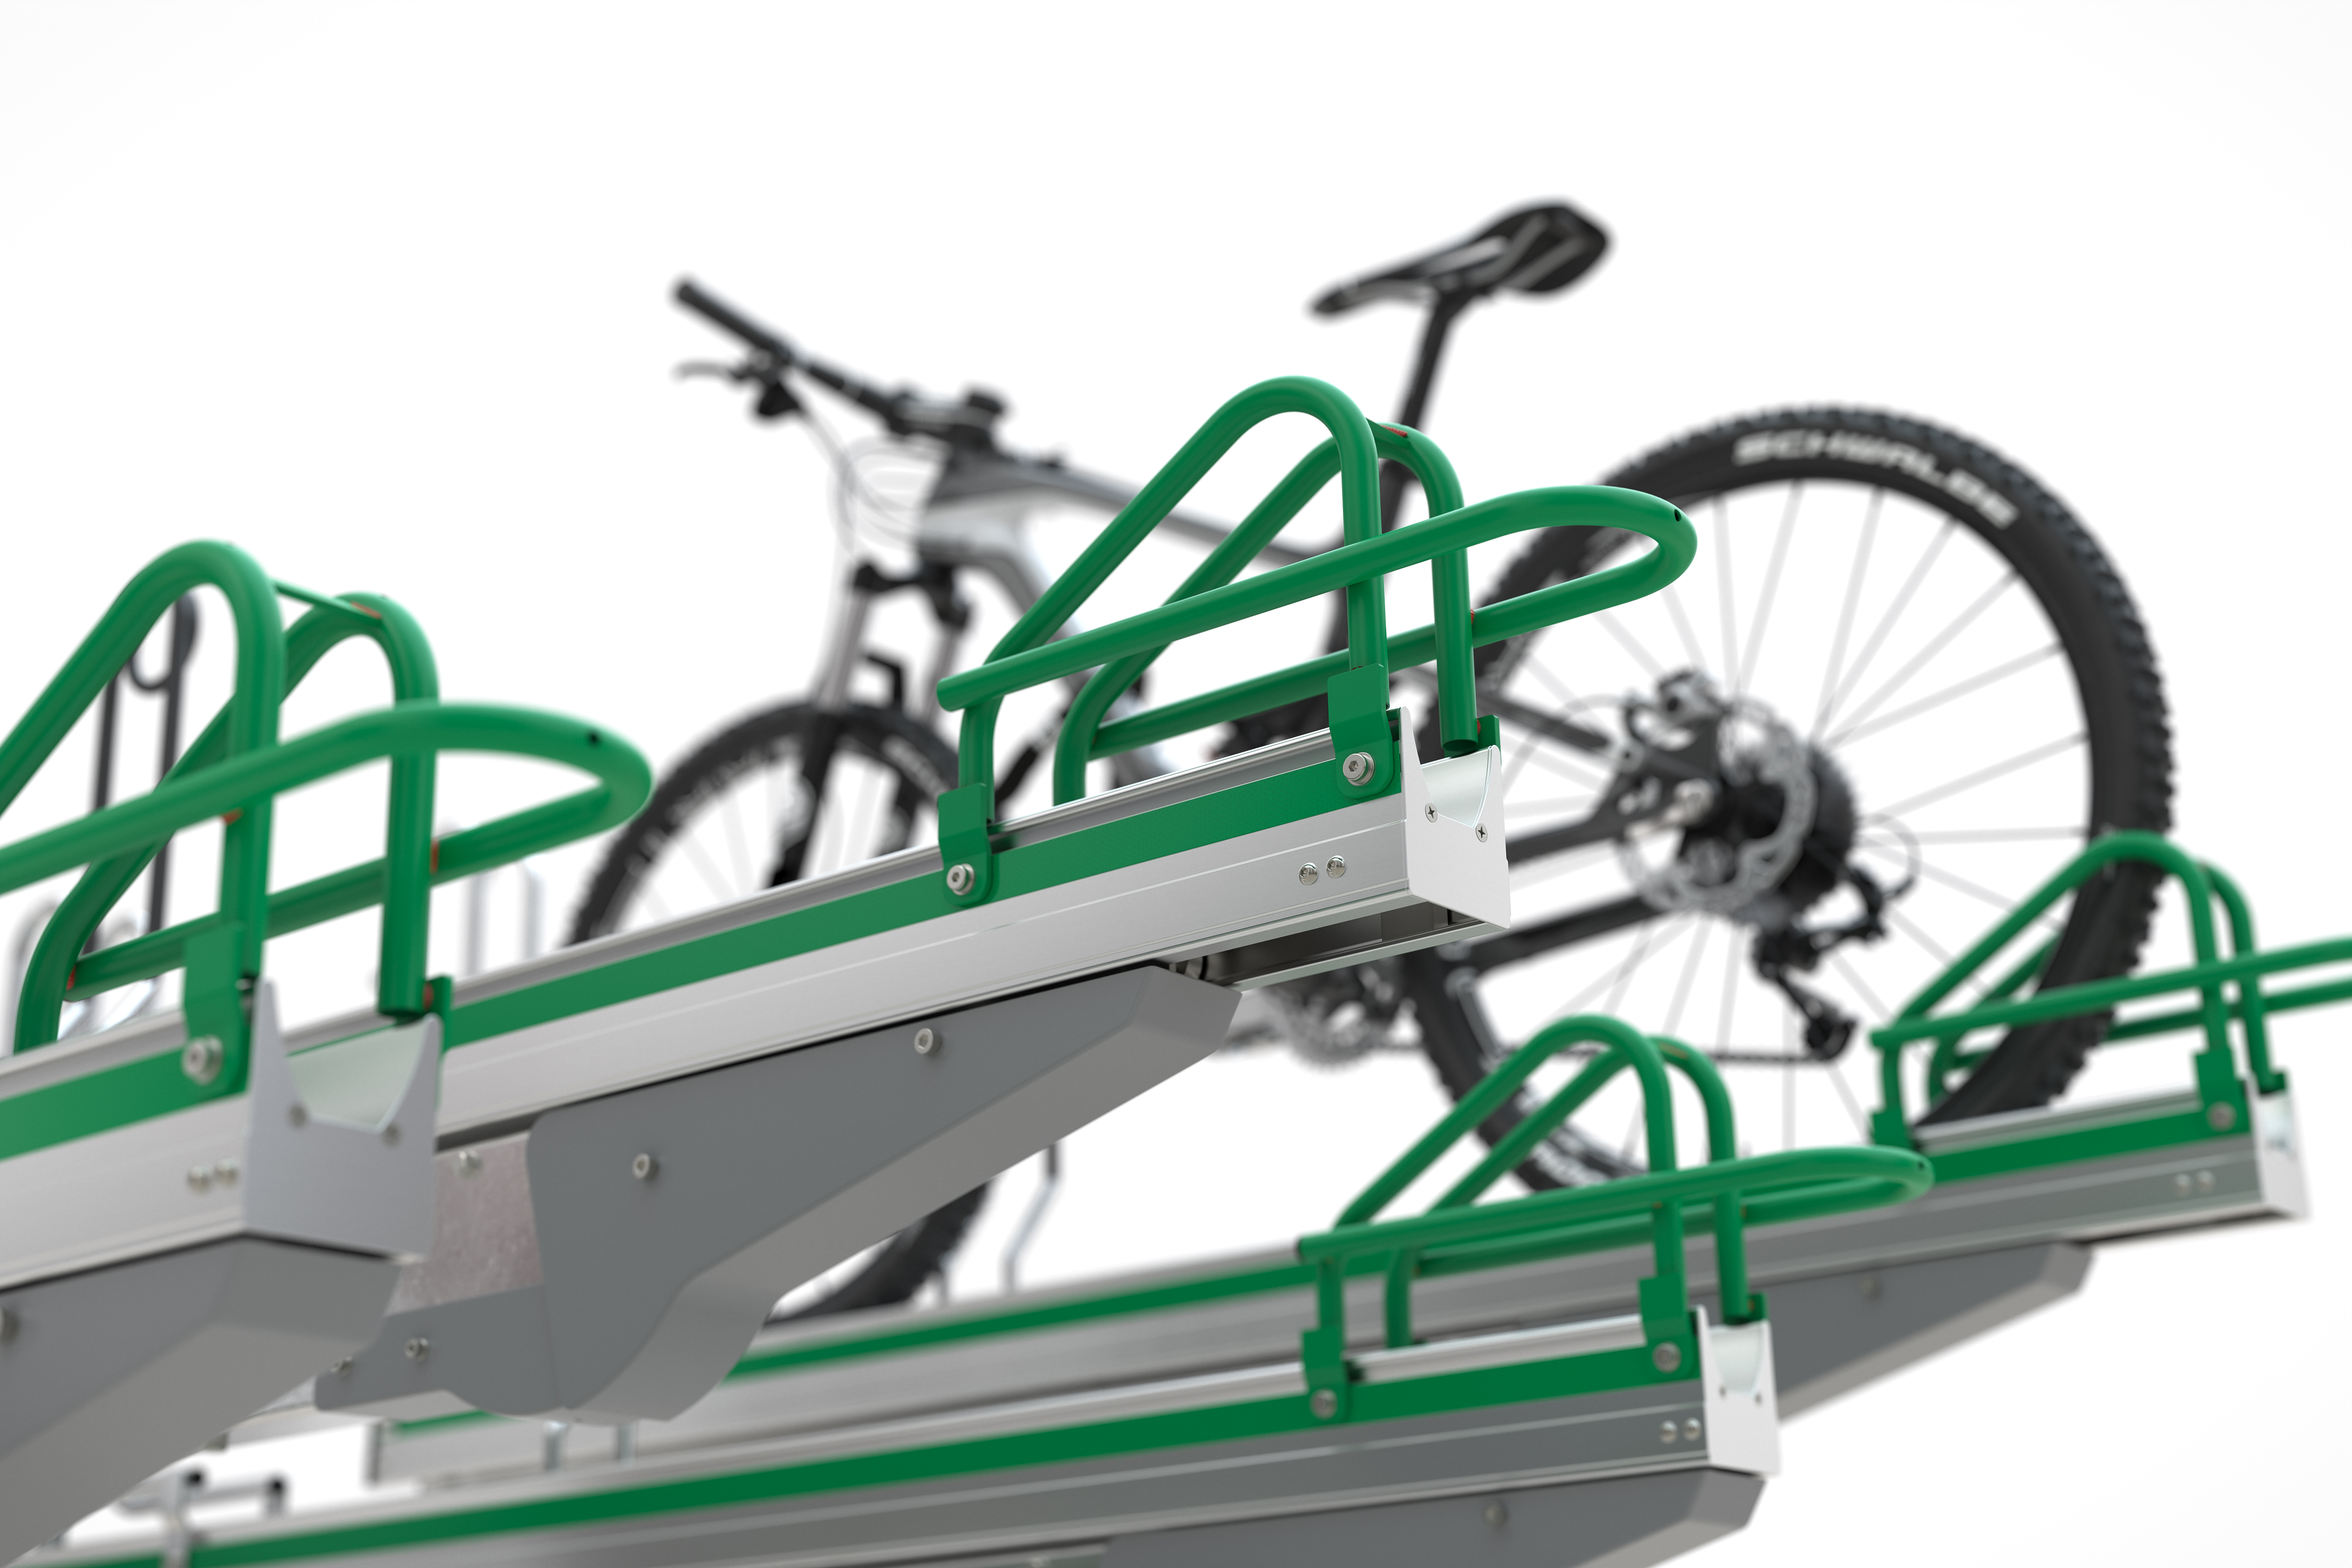 Detailansicht: Sicheres Abstellen von Fahrrädern in der oberen Etage durch zusätzliche Hinterradbügel